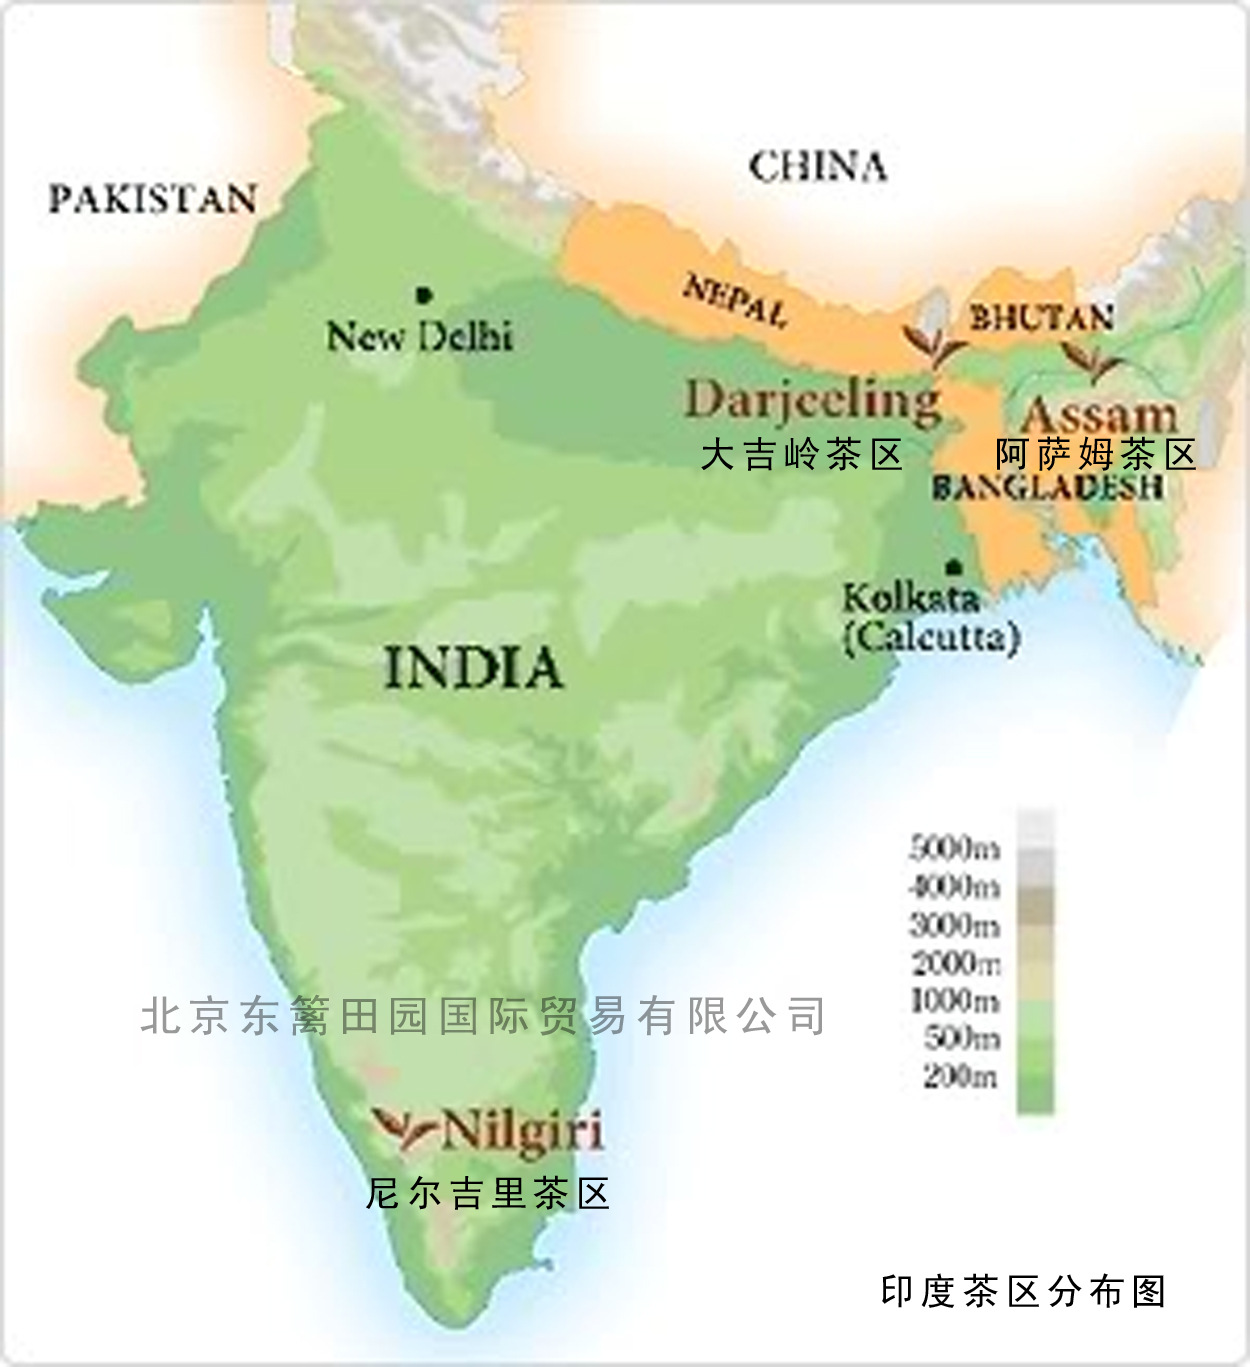 印度茶叶茶区分布图